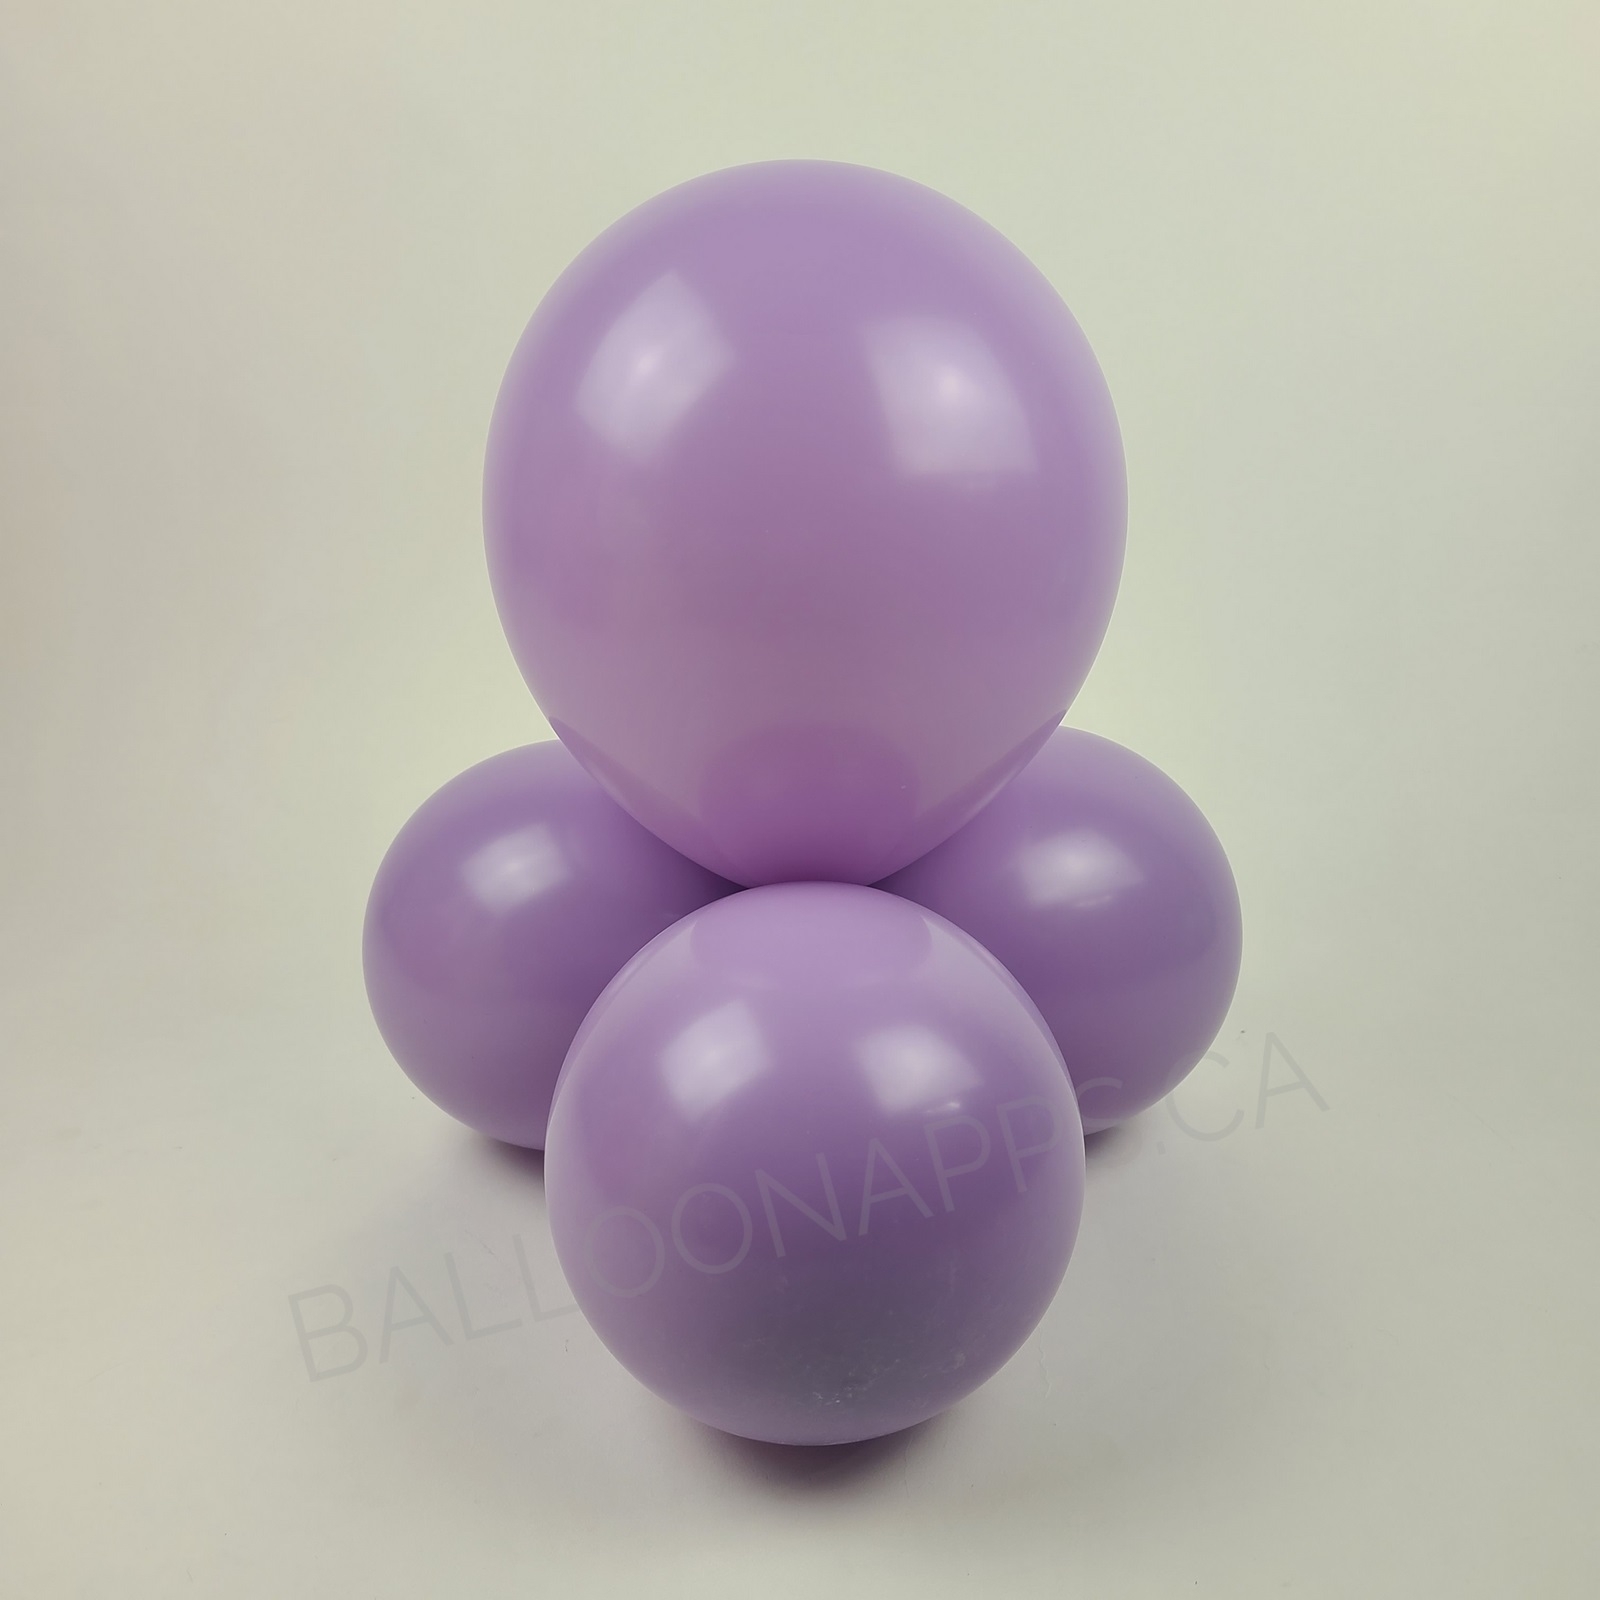 balloon texture TUFTEX (100) 11